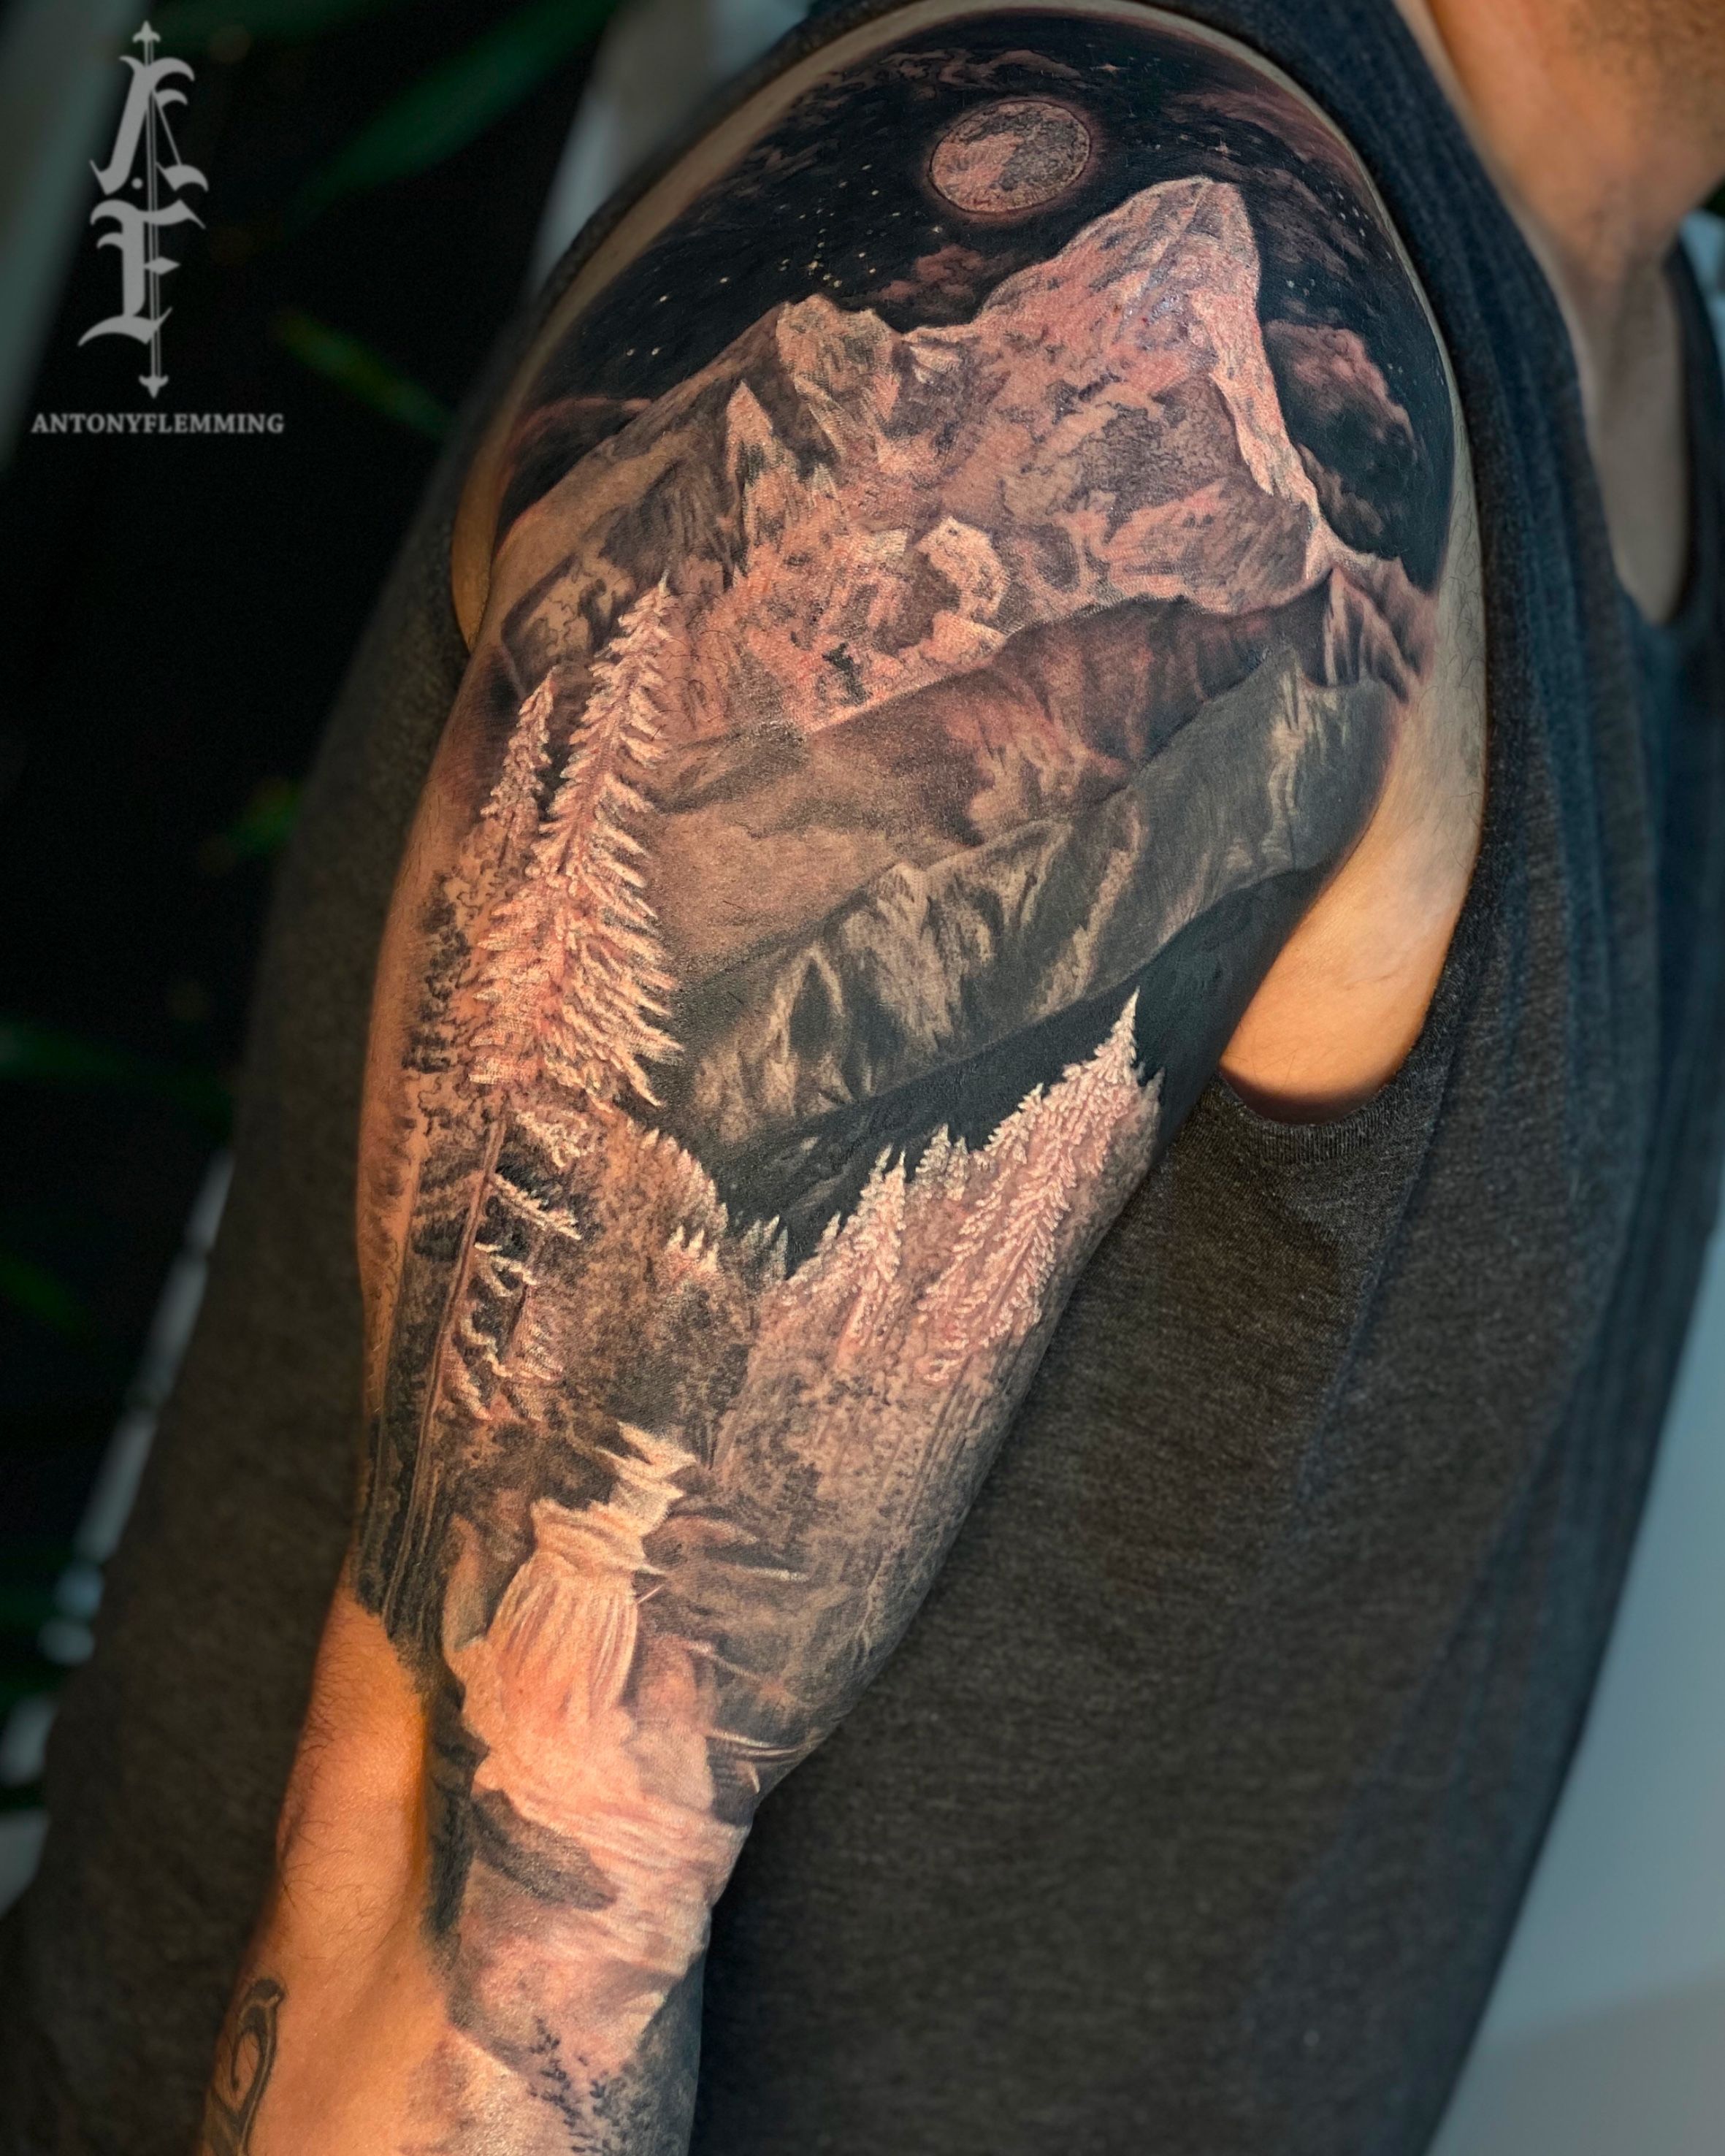 Tree Tattoo on Arm - Best Tattoo Ideas Gallery